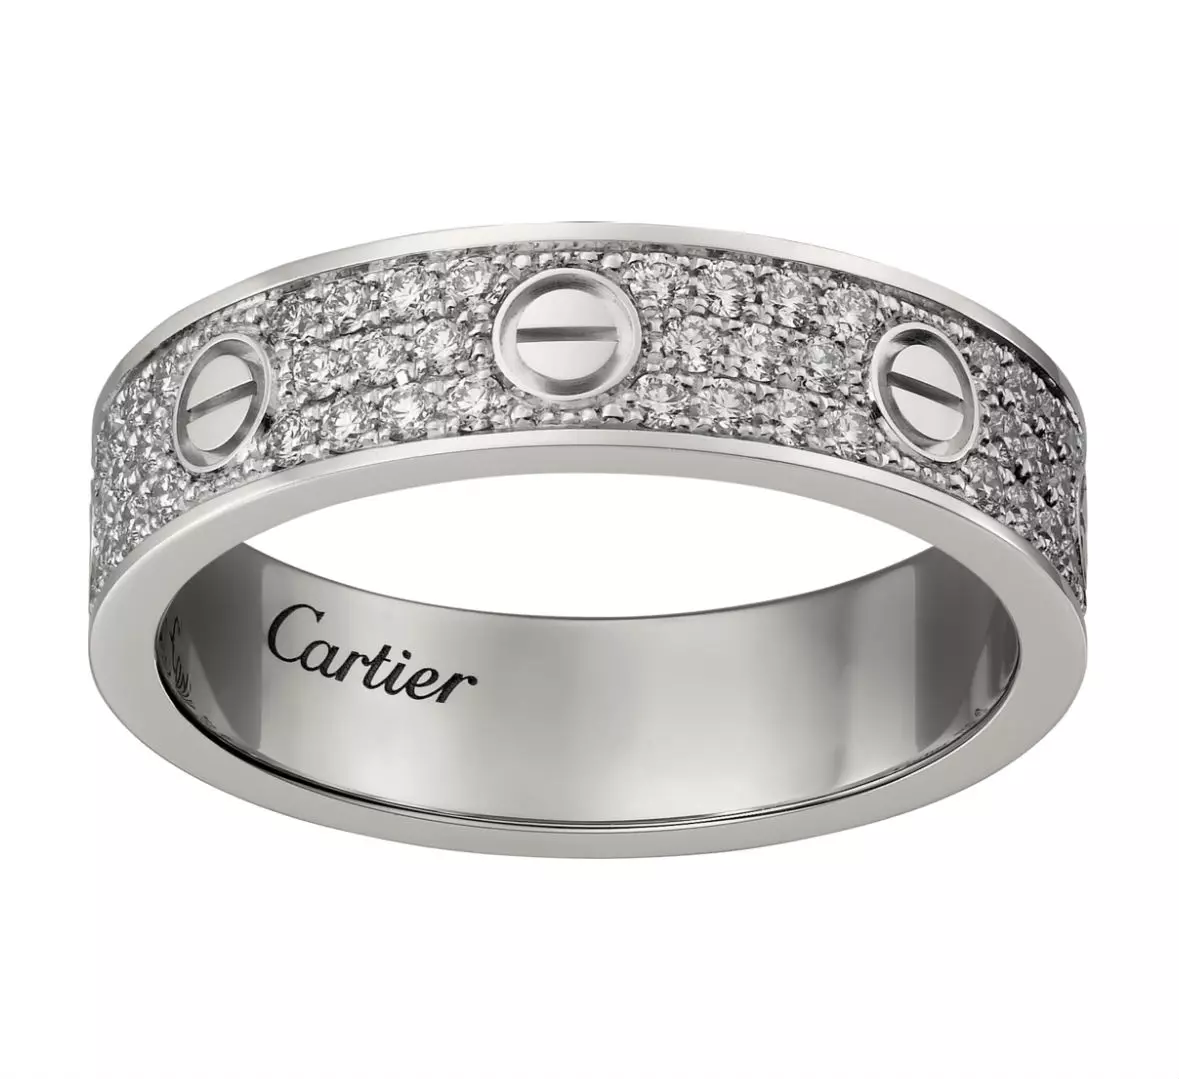 ሪንግ Cartier (115 ፎቶዎች): ታዋቂ ሥላሴ ሞዴሎች, የጥፍር, ፍቅር, ዋጋ የጌጣጌጥ ታሪክ እና ክለሳ 3102_66